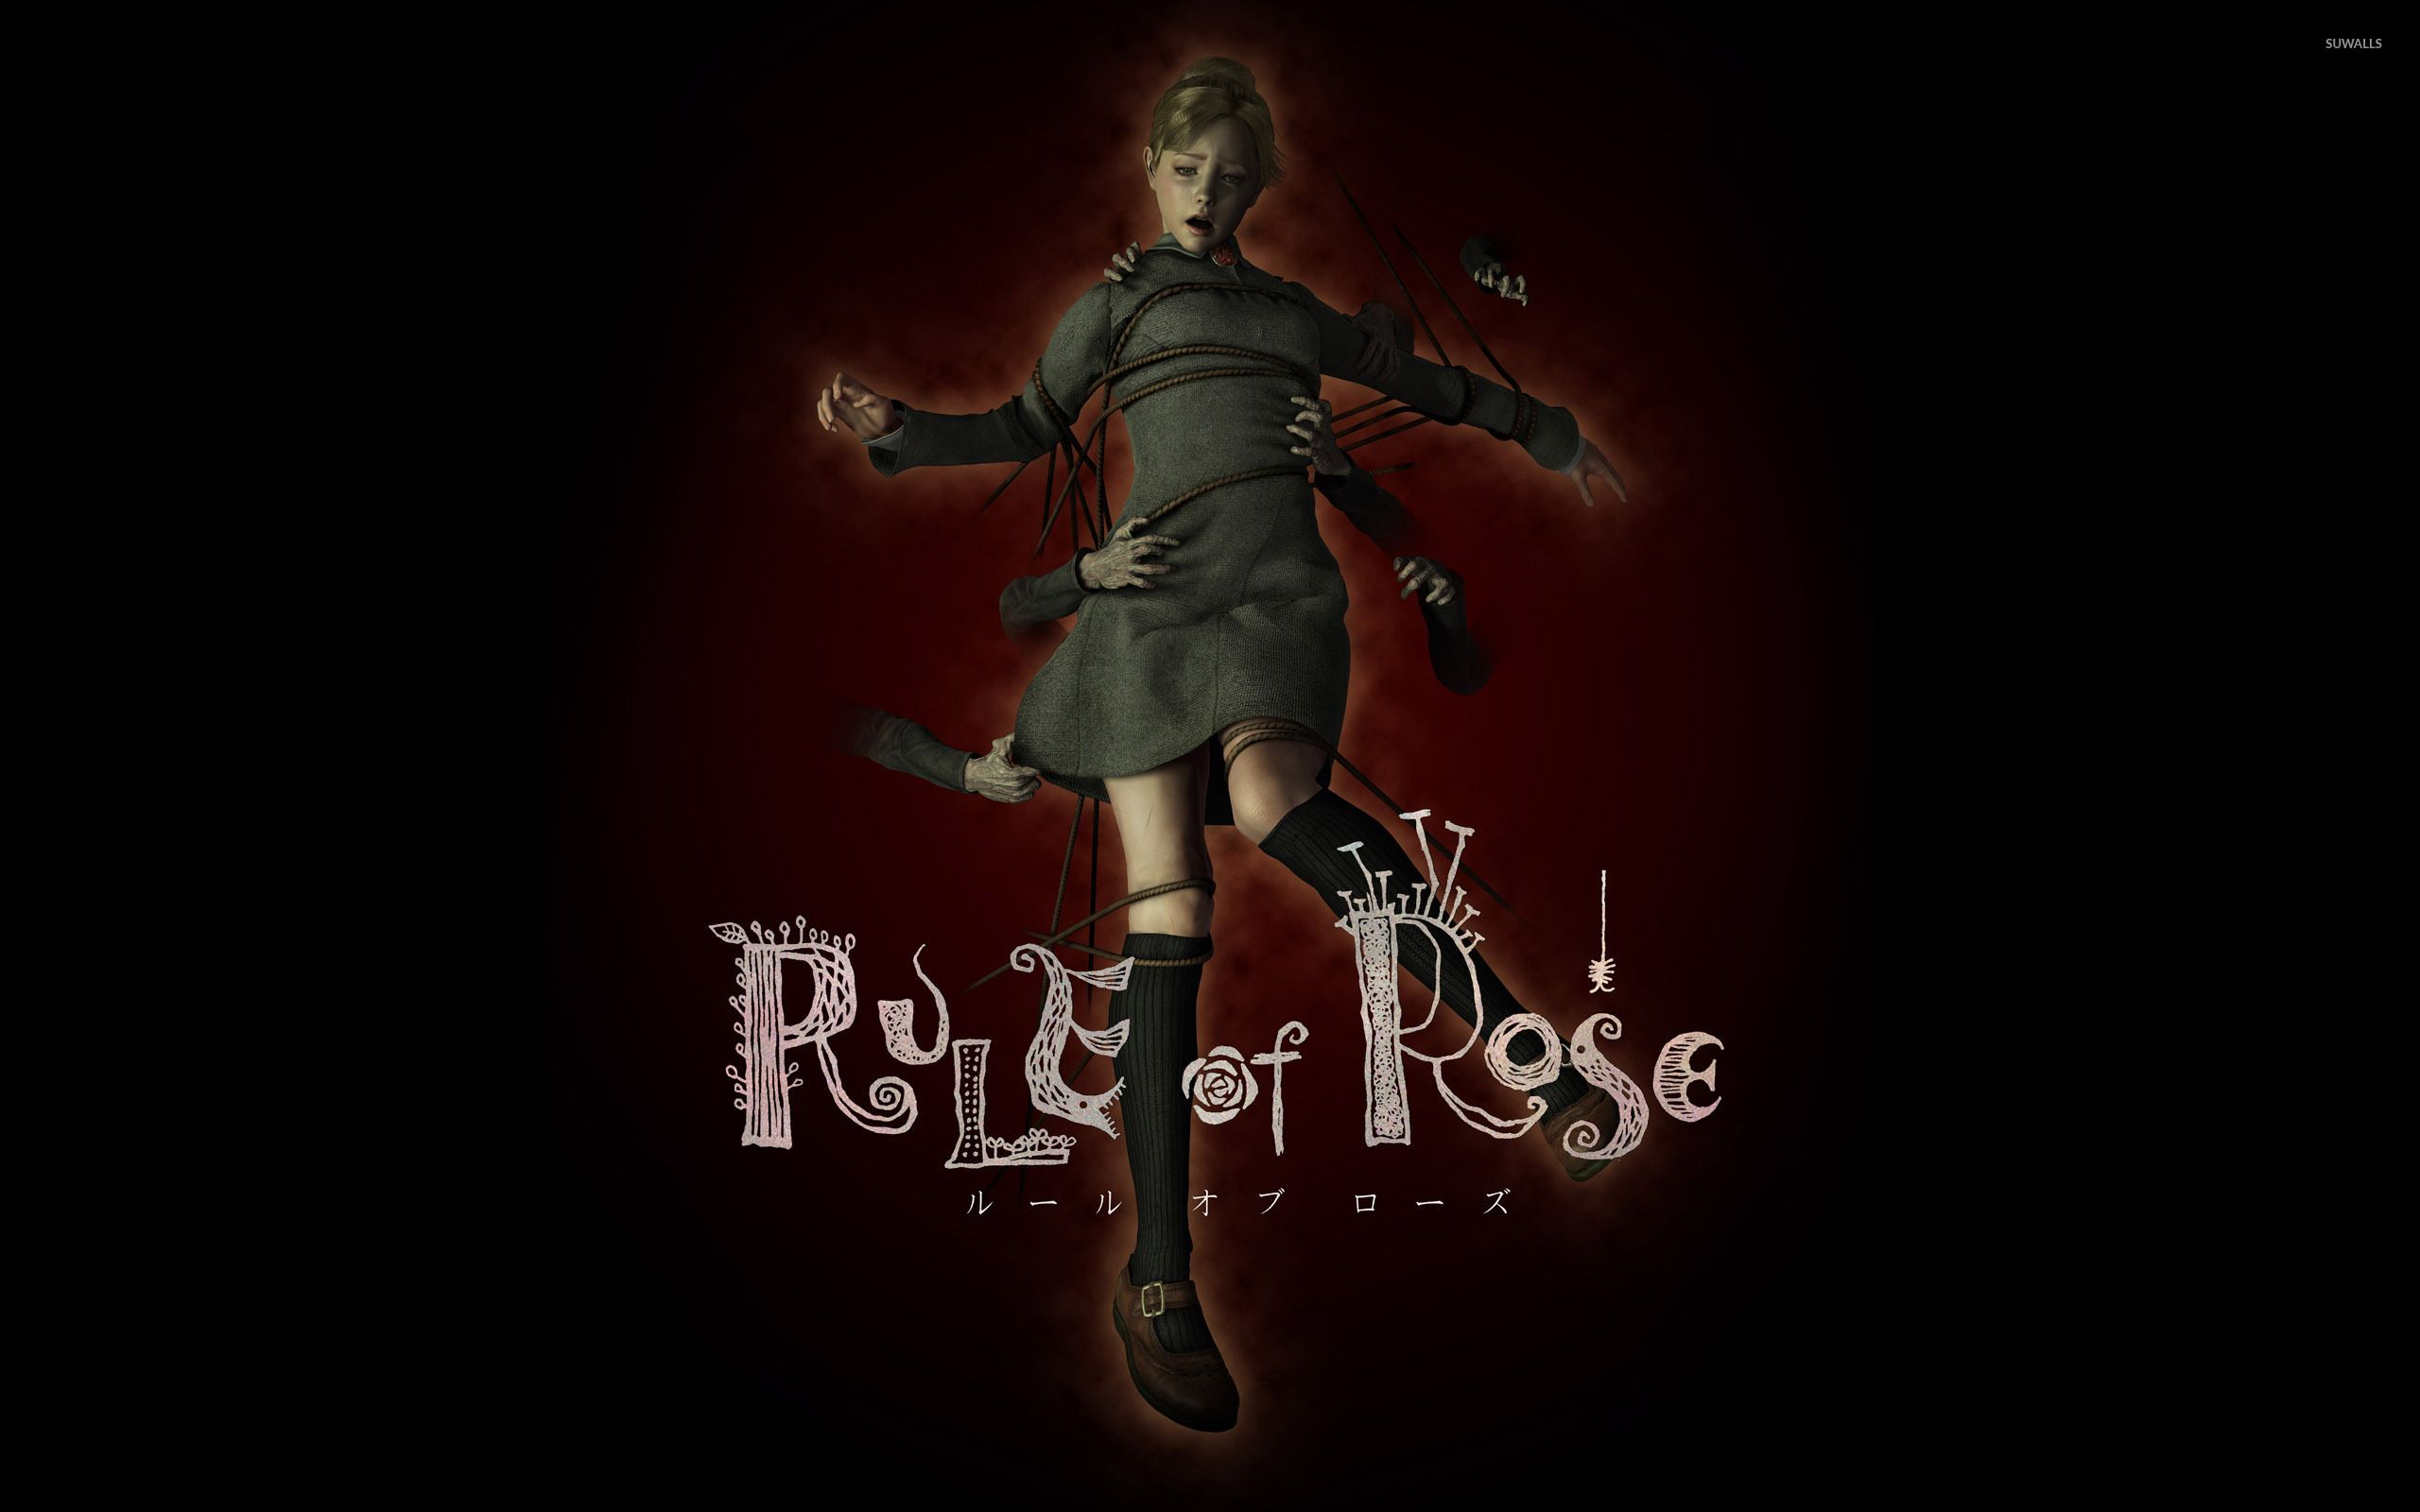 Rule of rose steam фото 40